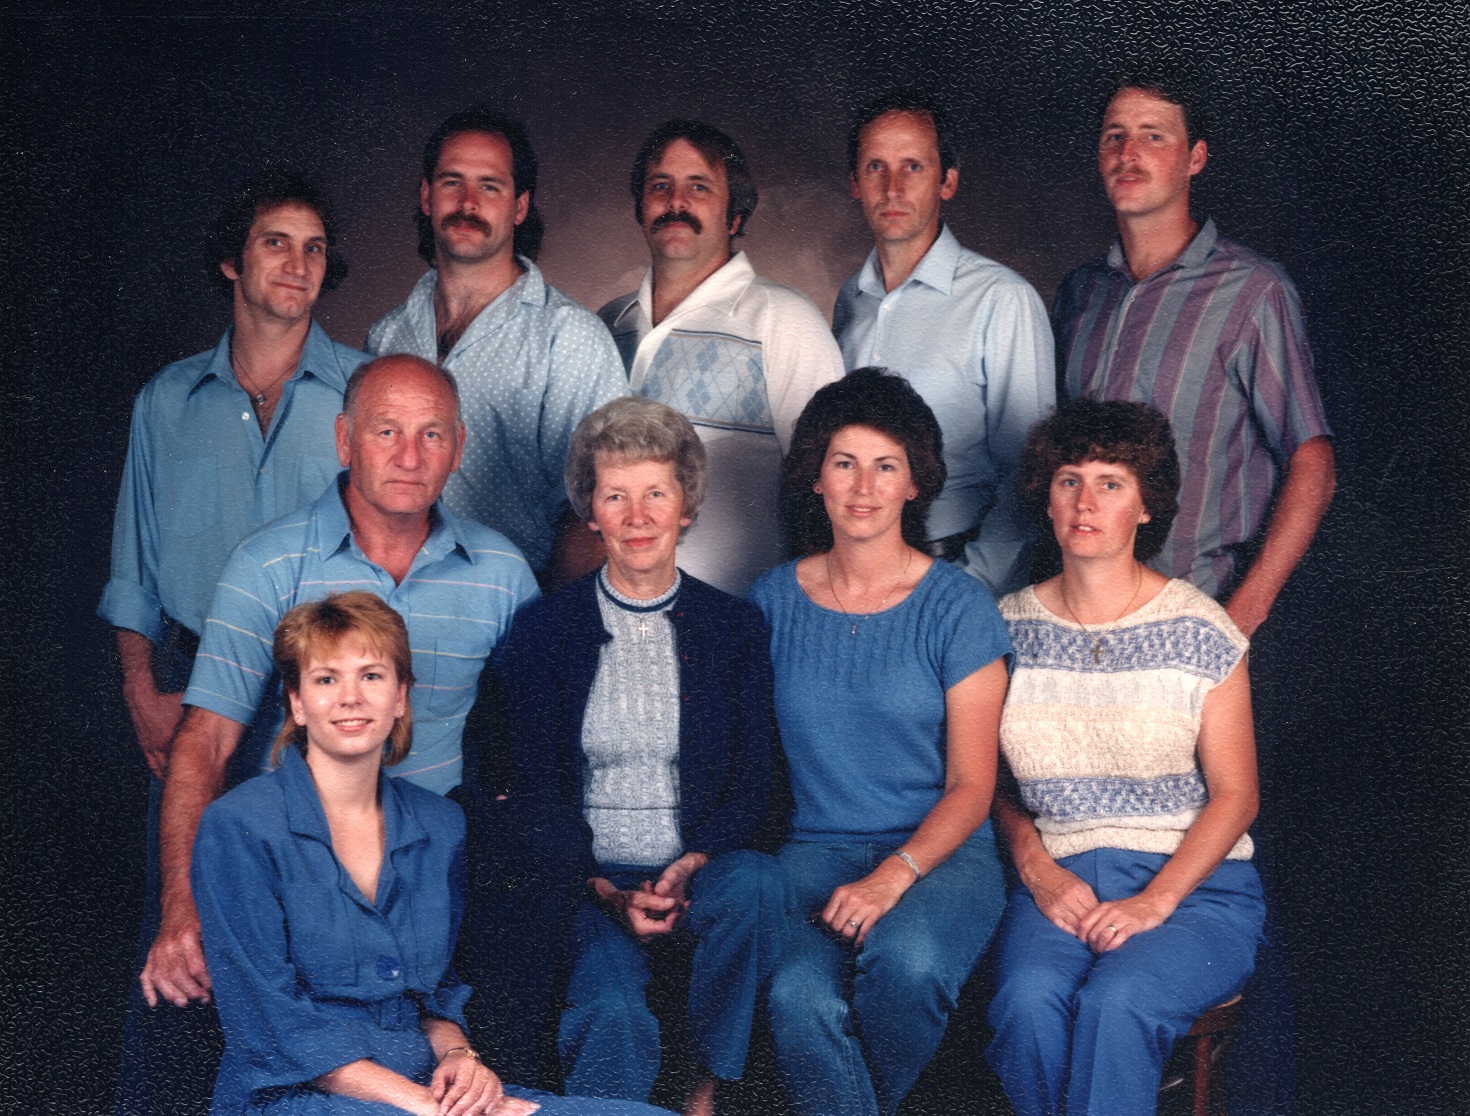 1986 Family Portrait